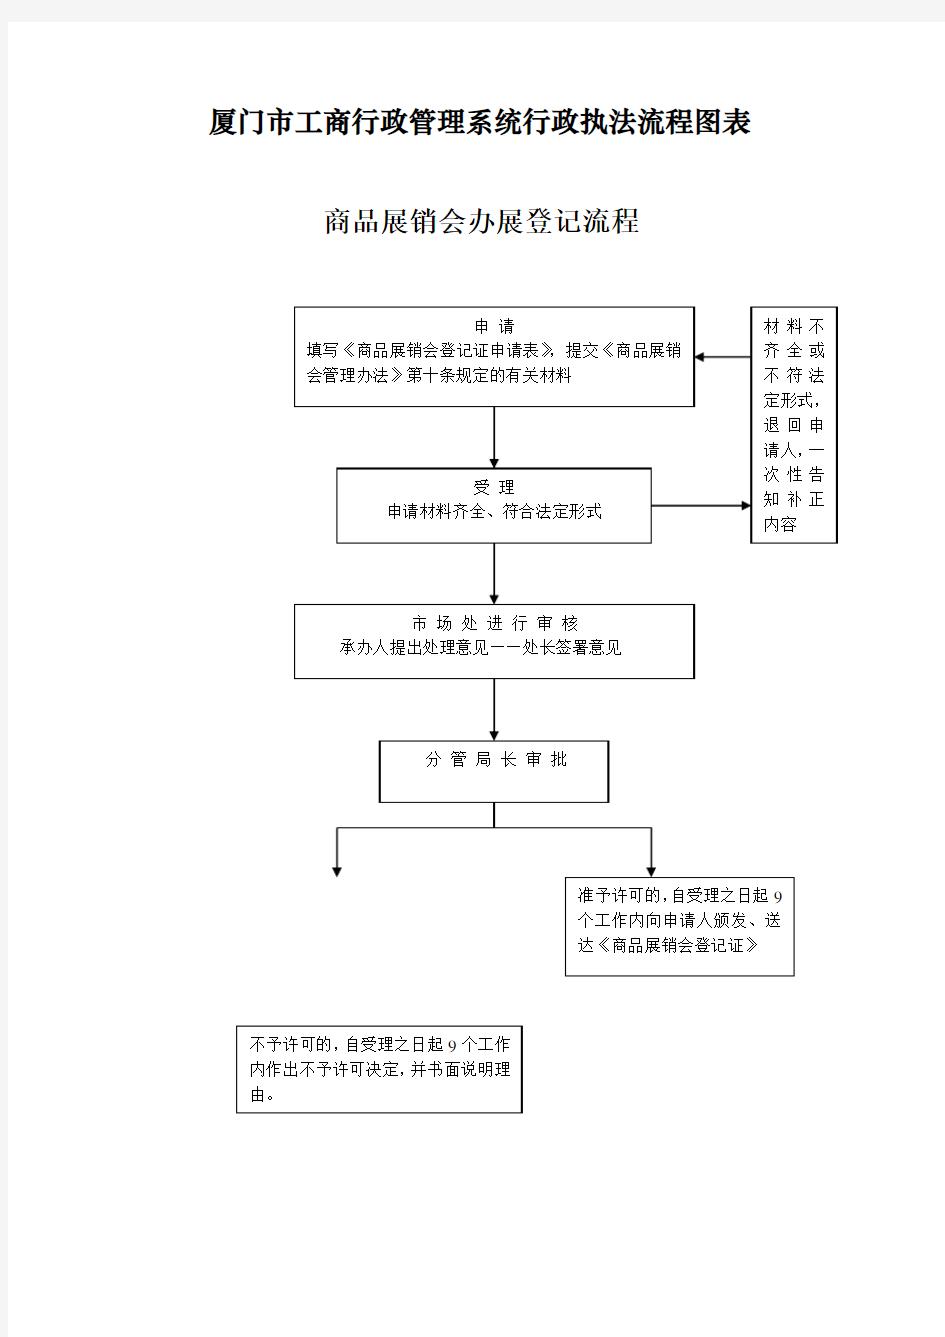 某市工商行政管理系统行政执法流程图(doc 68页)